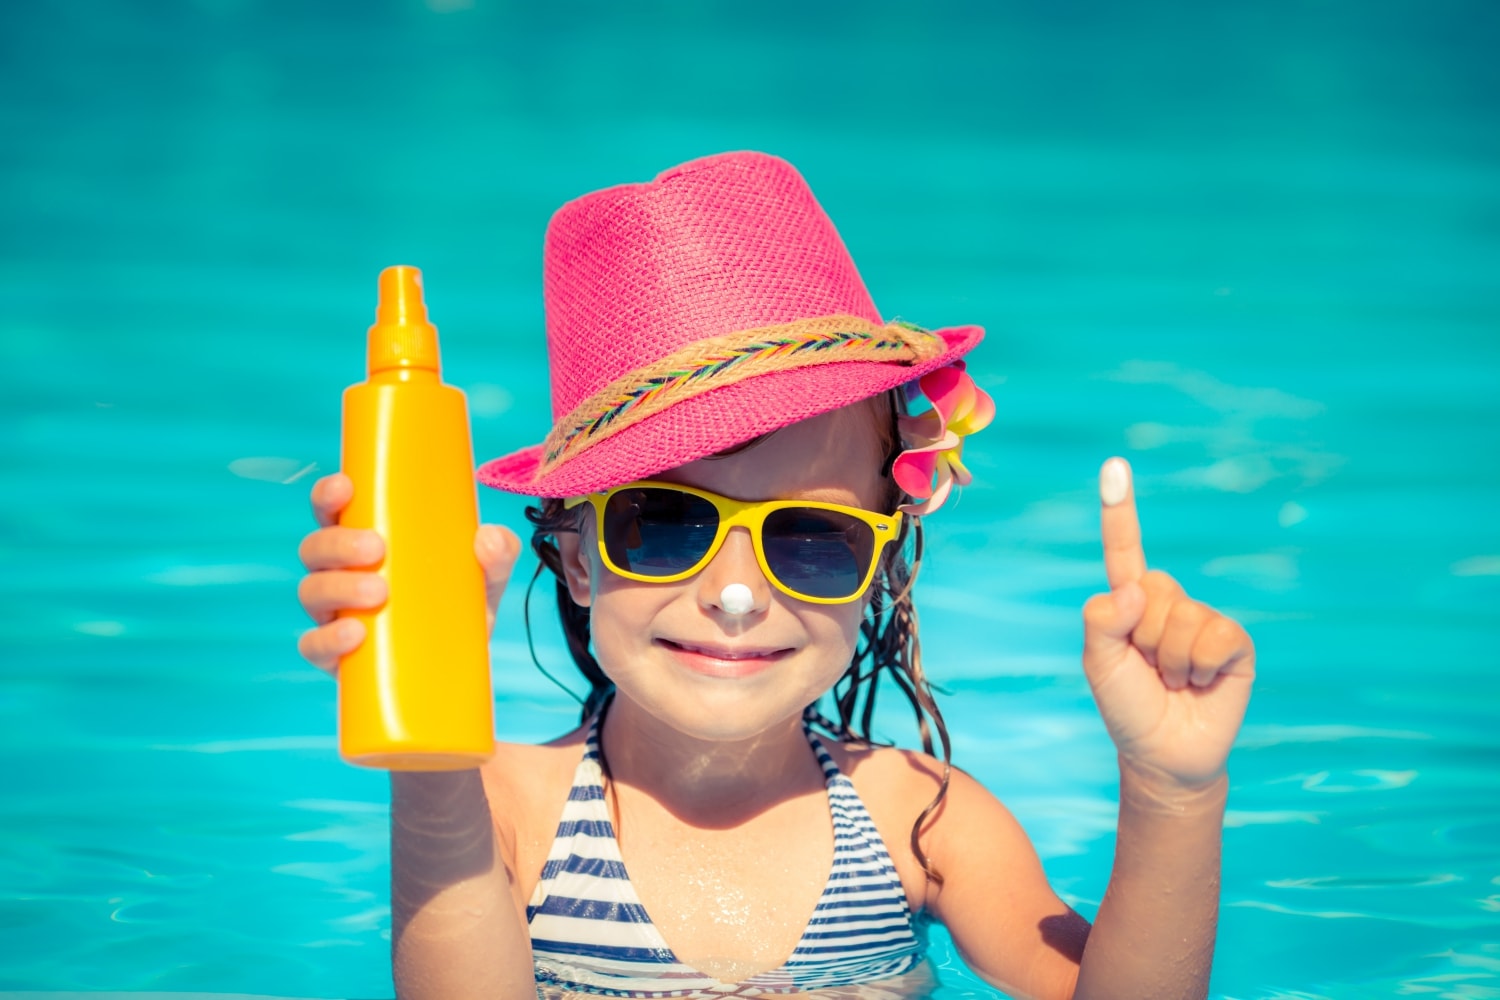 Sonnenschutz – wir passen auf! - KinderKinder